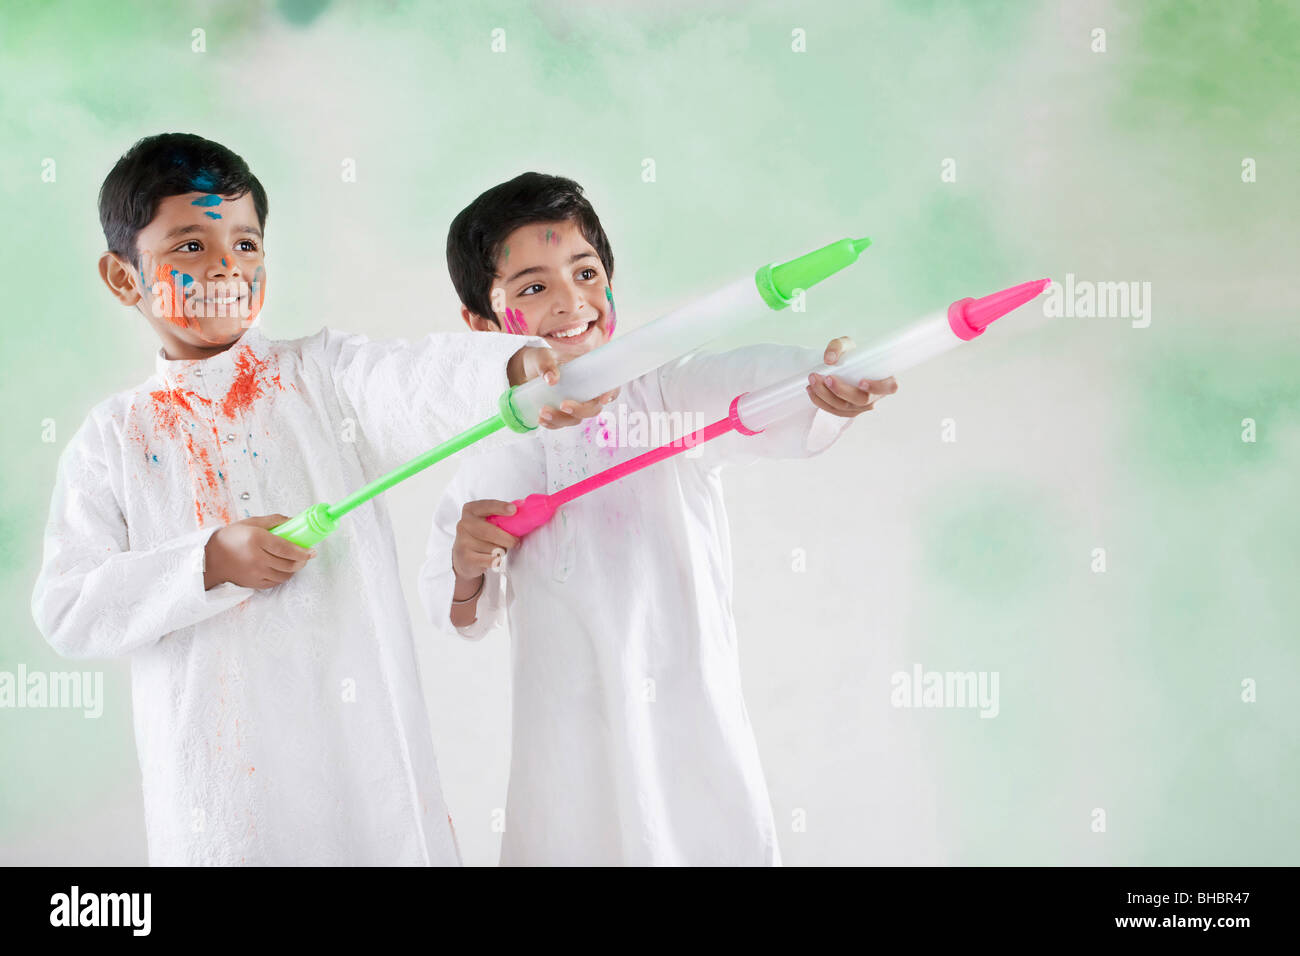 Deux garçons jouant avec pichkaris Banque D'Images